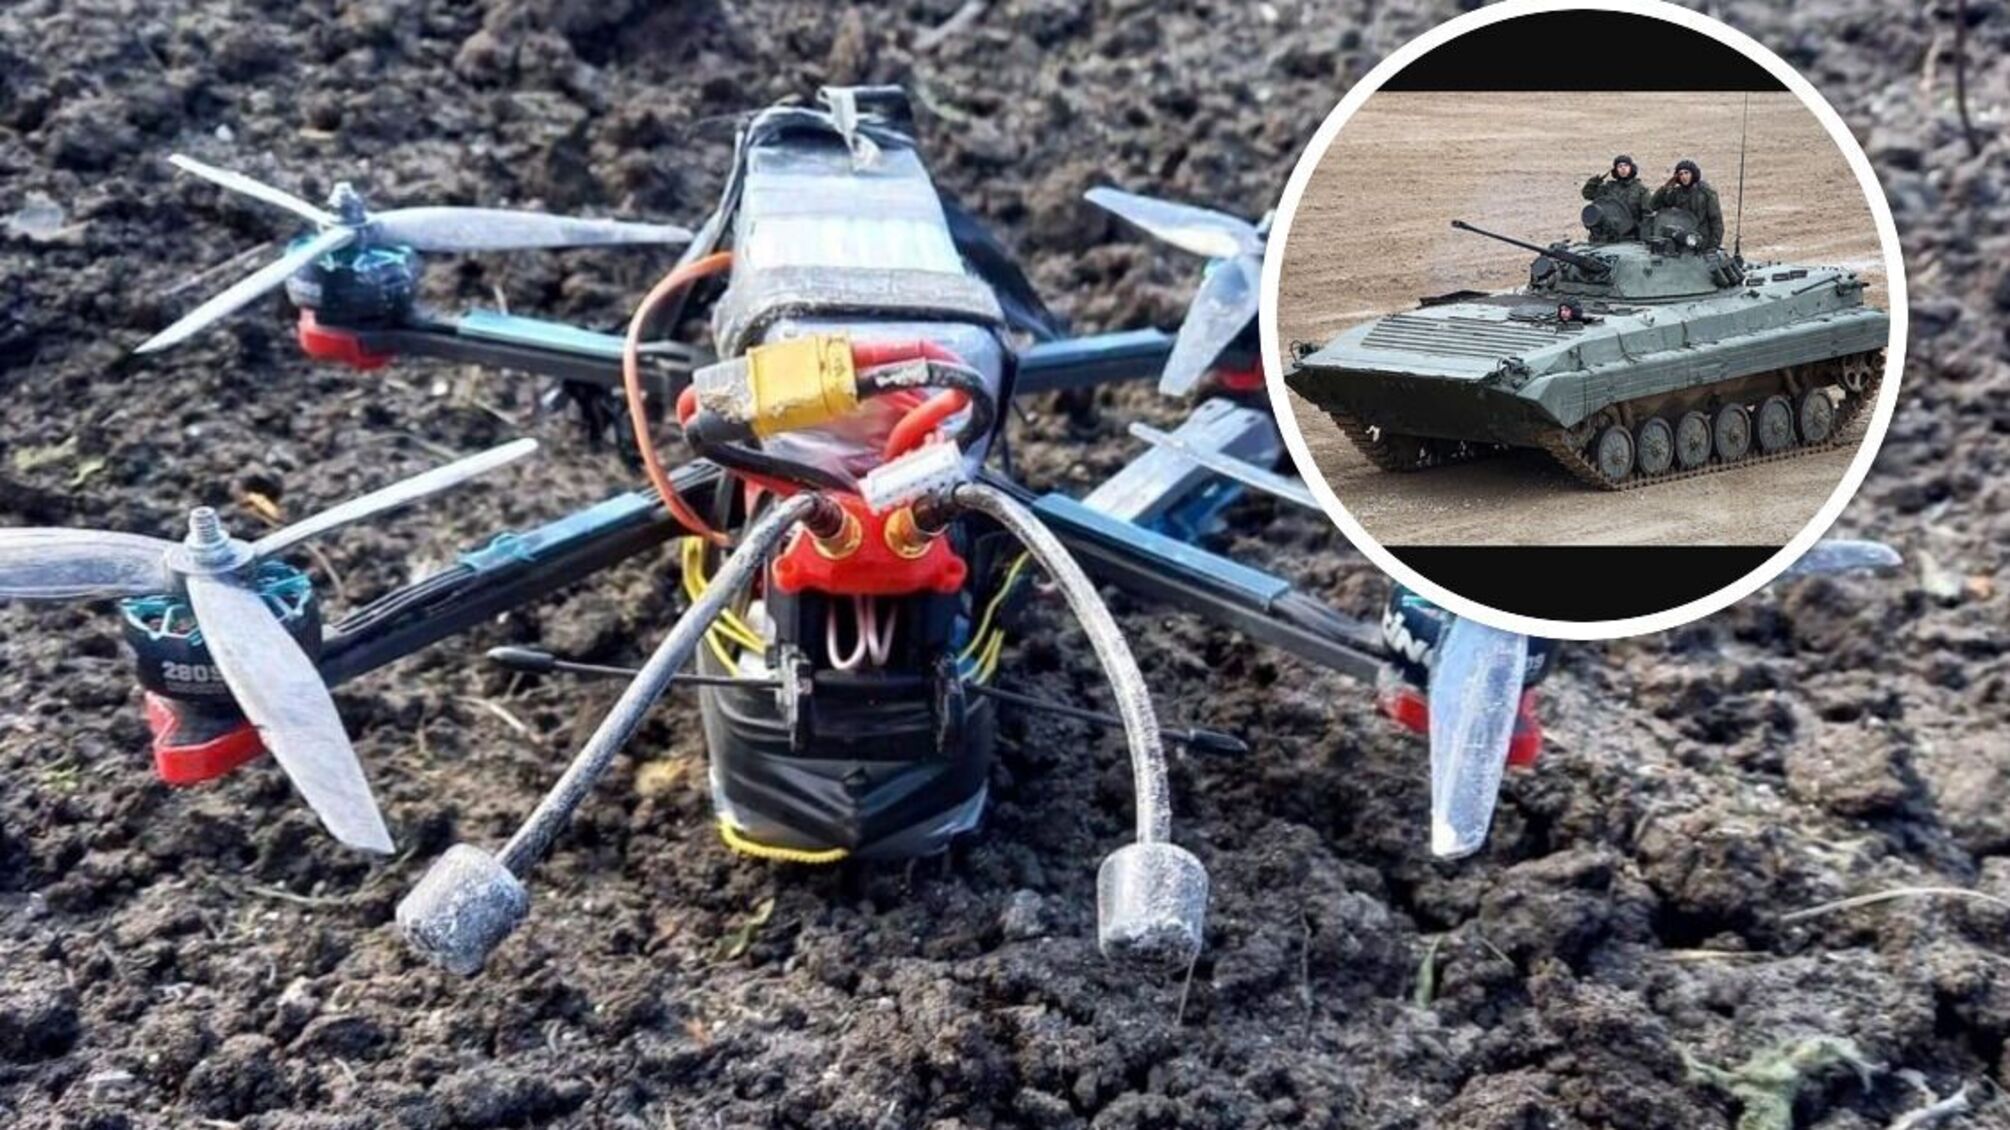 Ситуація під Вугледаром: ЗСУ використали FPV-дрони проти бронемашин армії рф - відео